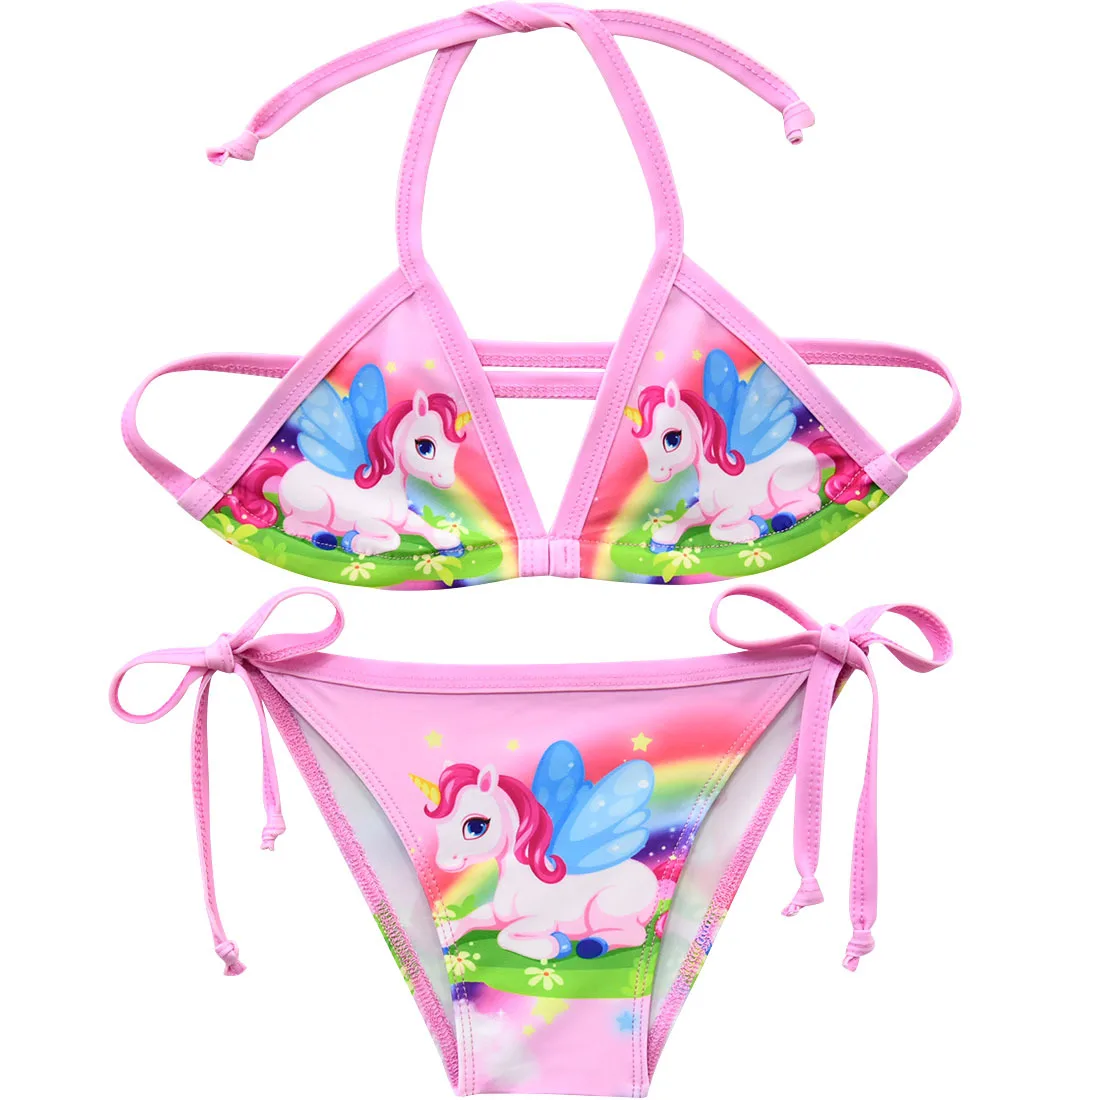 New Unicorn Girls Swimsuit Two Piece 3-12 Years Children's Swimwear Unicorn Bikini Set For Girl Swimming Beachwear G48-8073 - Цвет: G48-8073-Pink